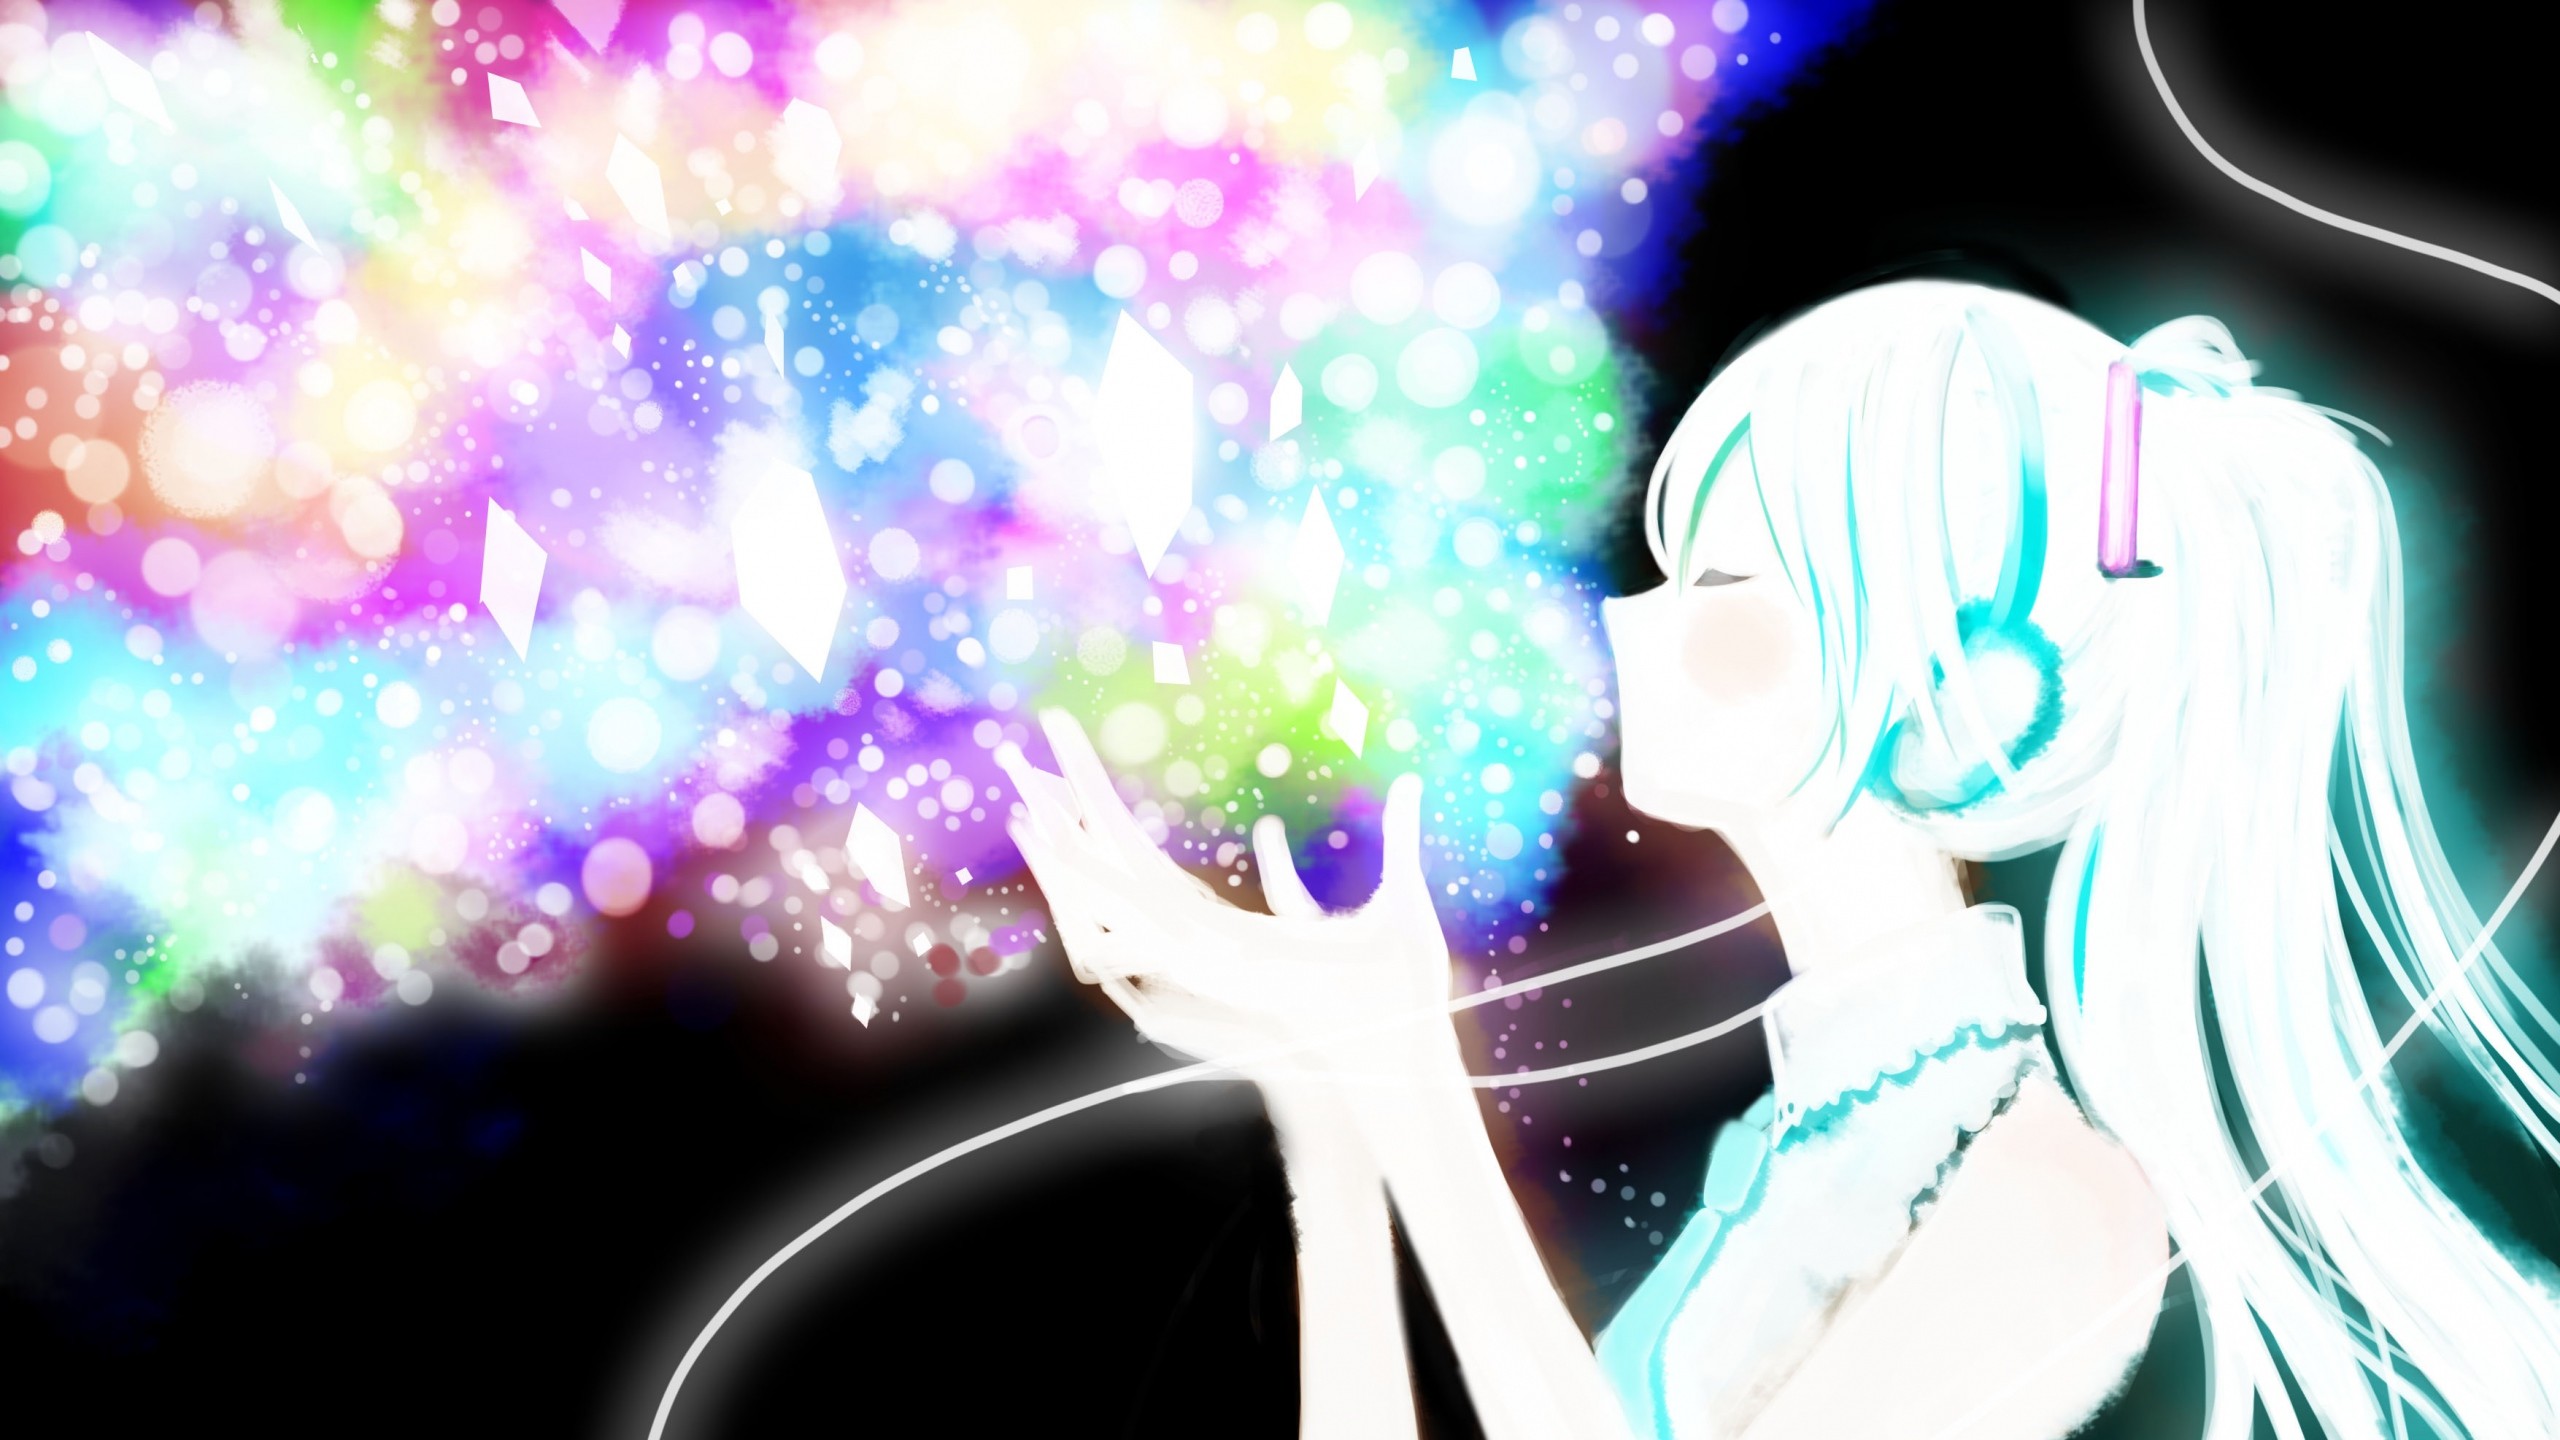 2560x1440 miku, Vocaloid, Anime, Girl, Glitter Wallpaper, Background Mac .